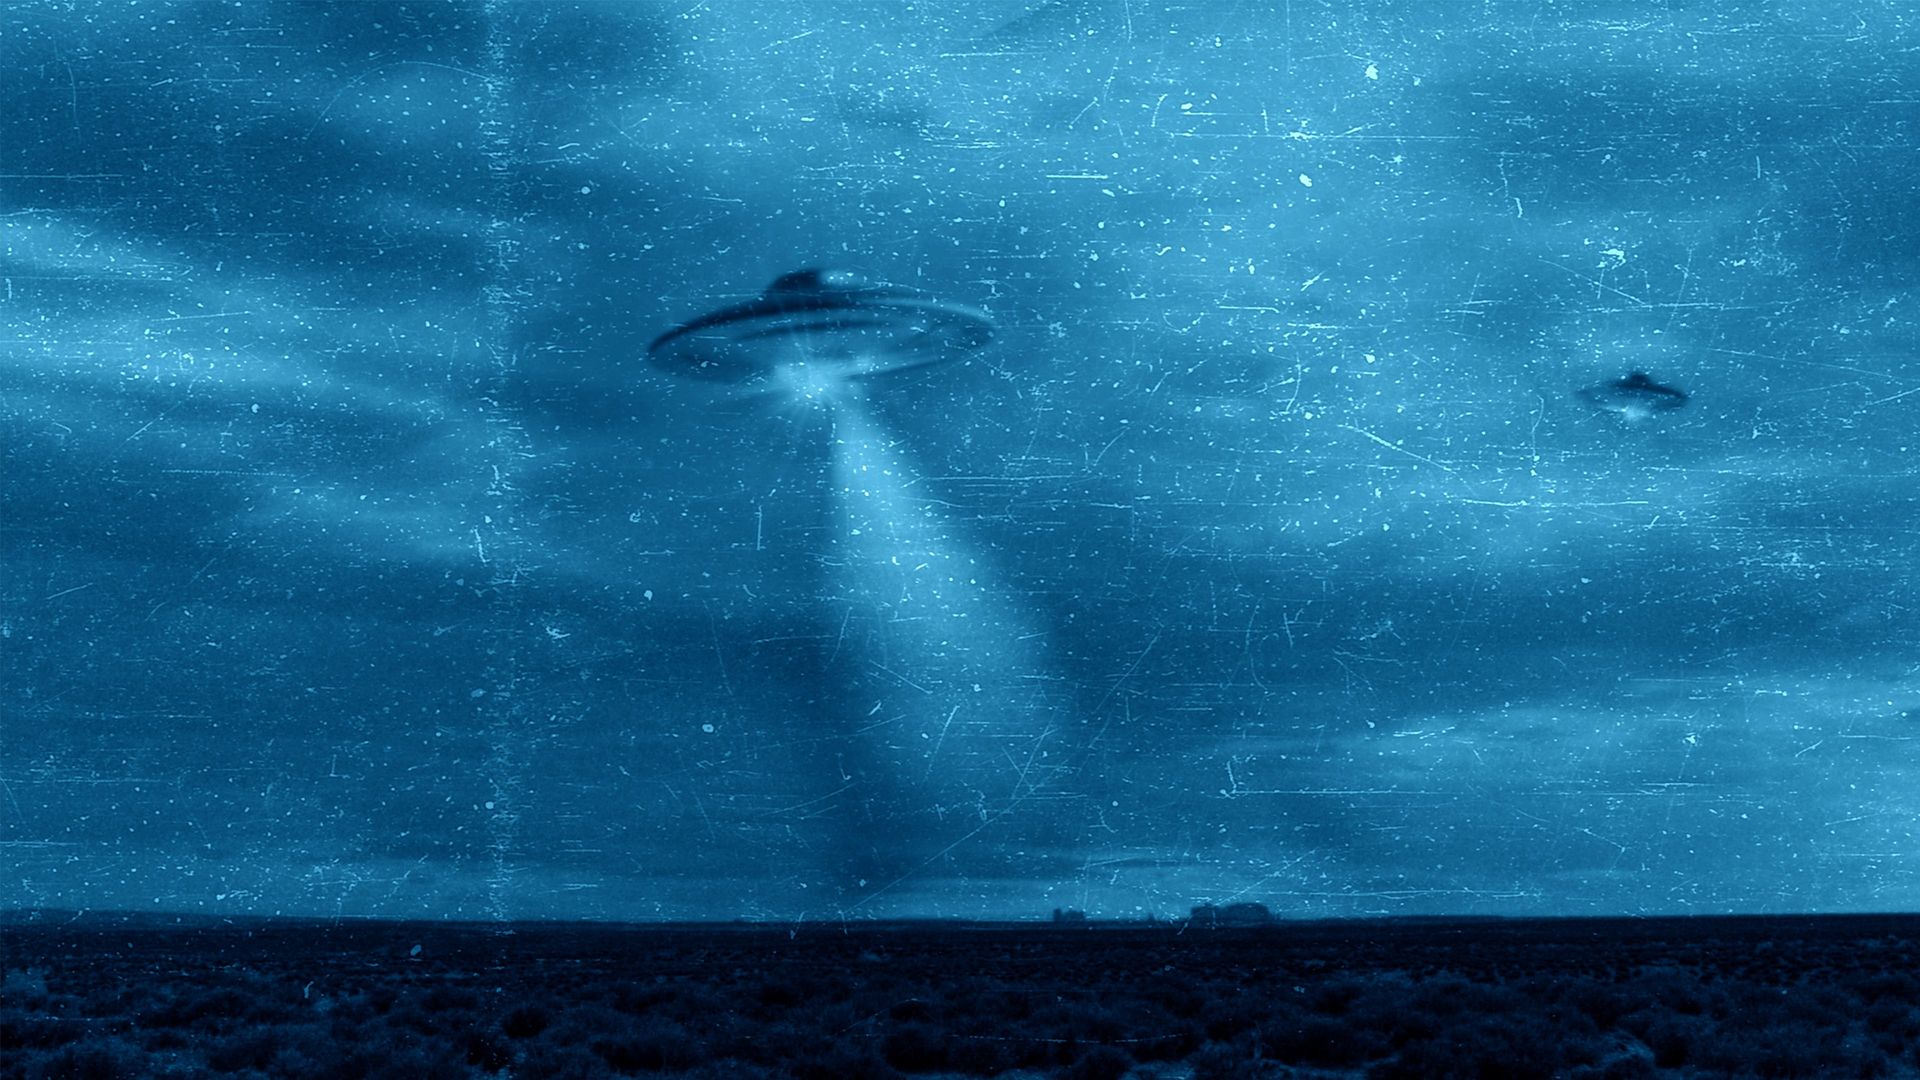 UFO Witness background